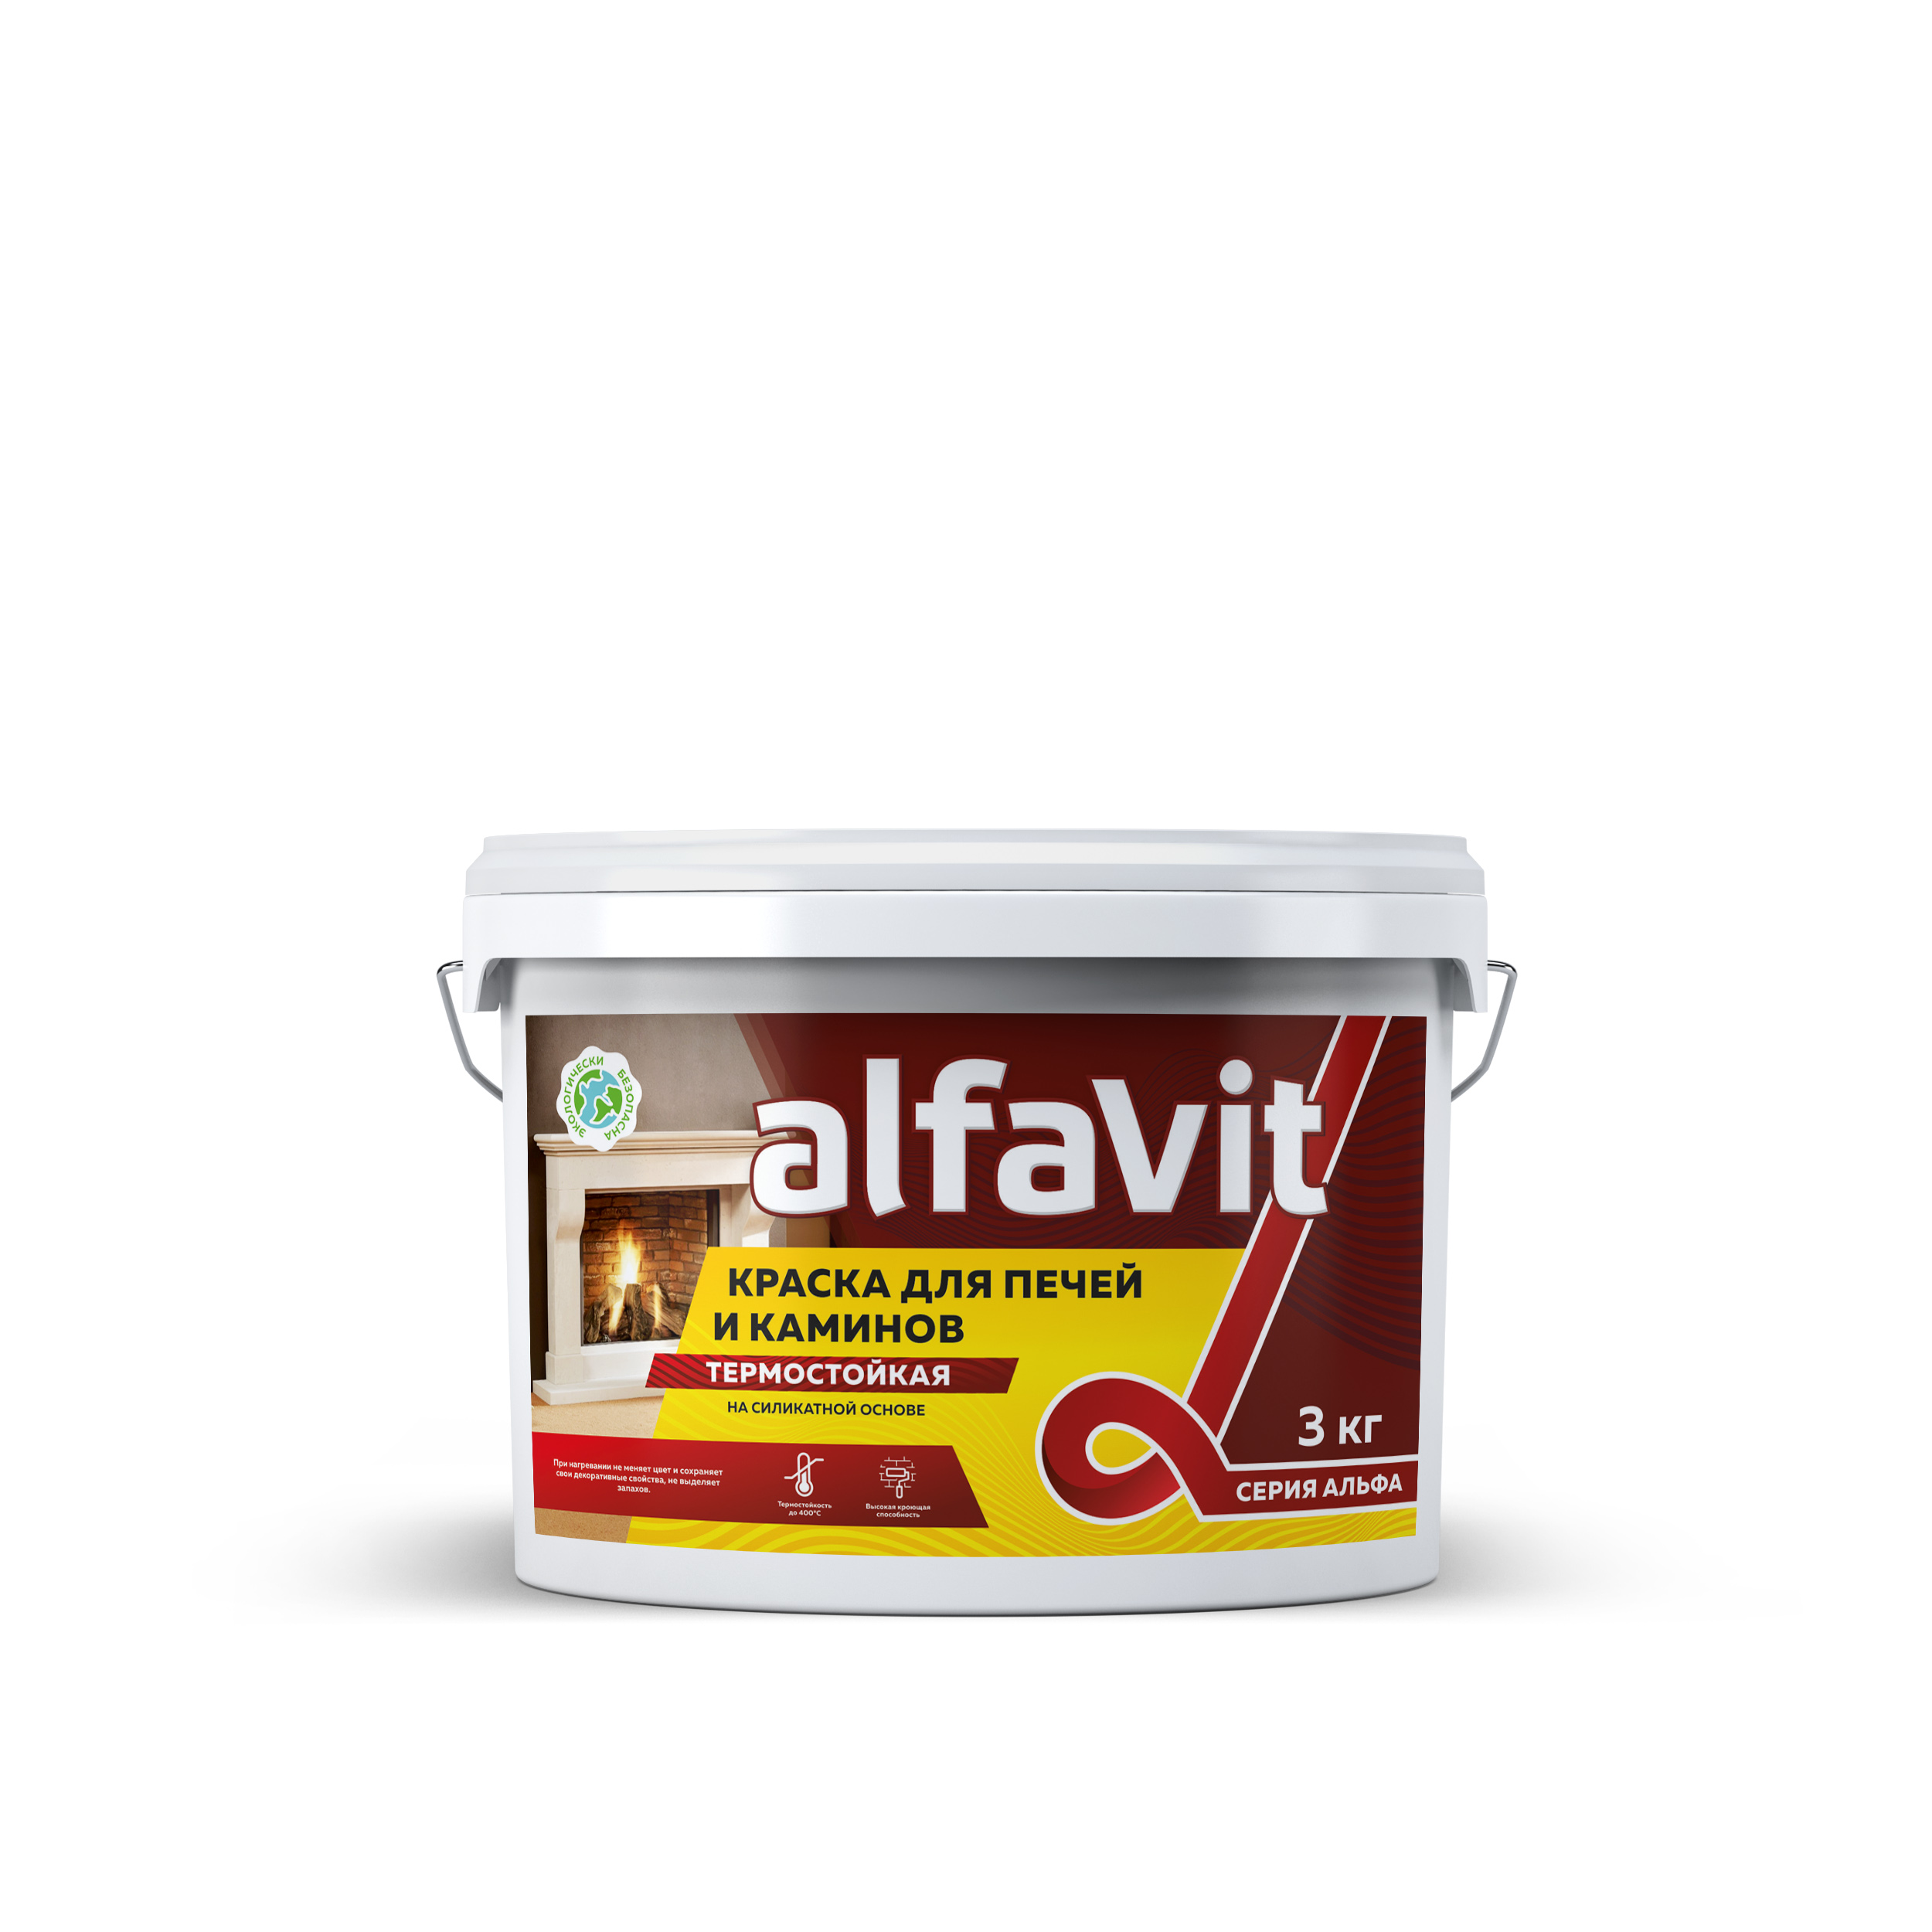 Краска для печей и каминов Alfavit серия Альфа, термостойкая, белая, 3 кг герметик для печей penosil